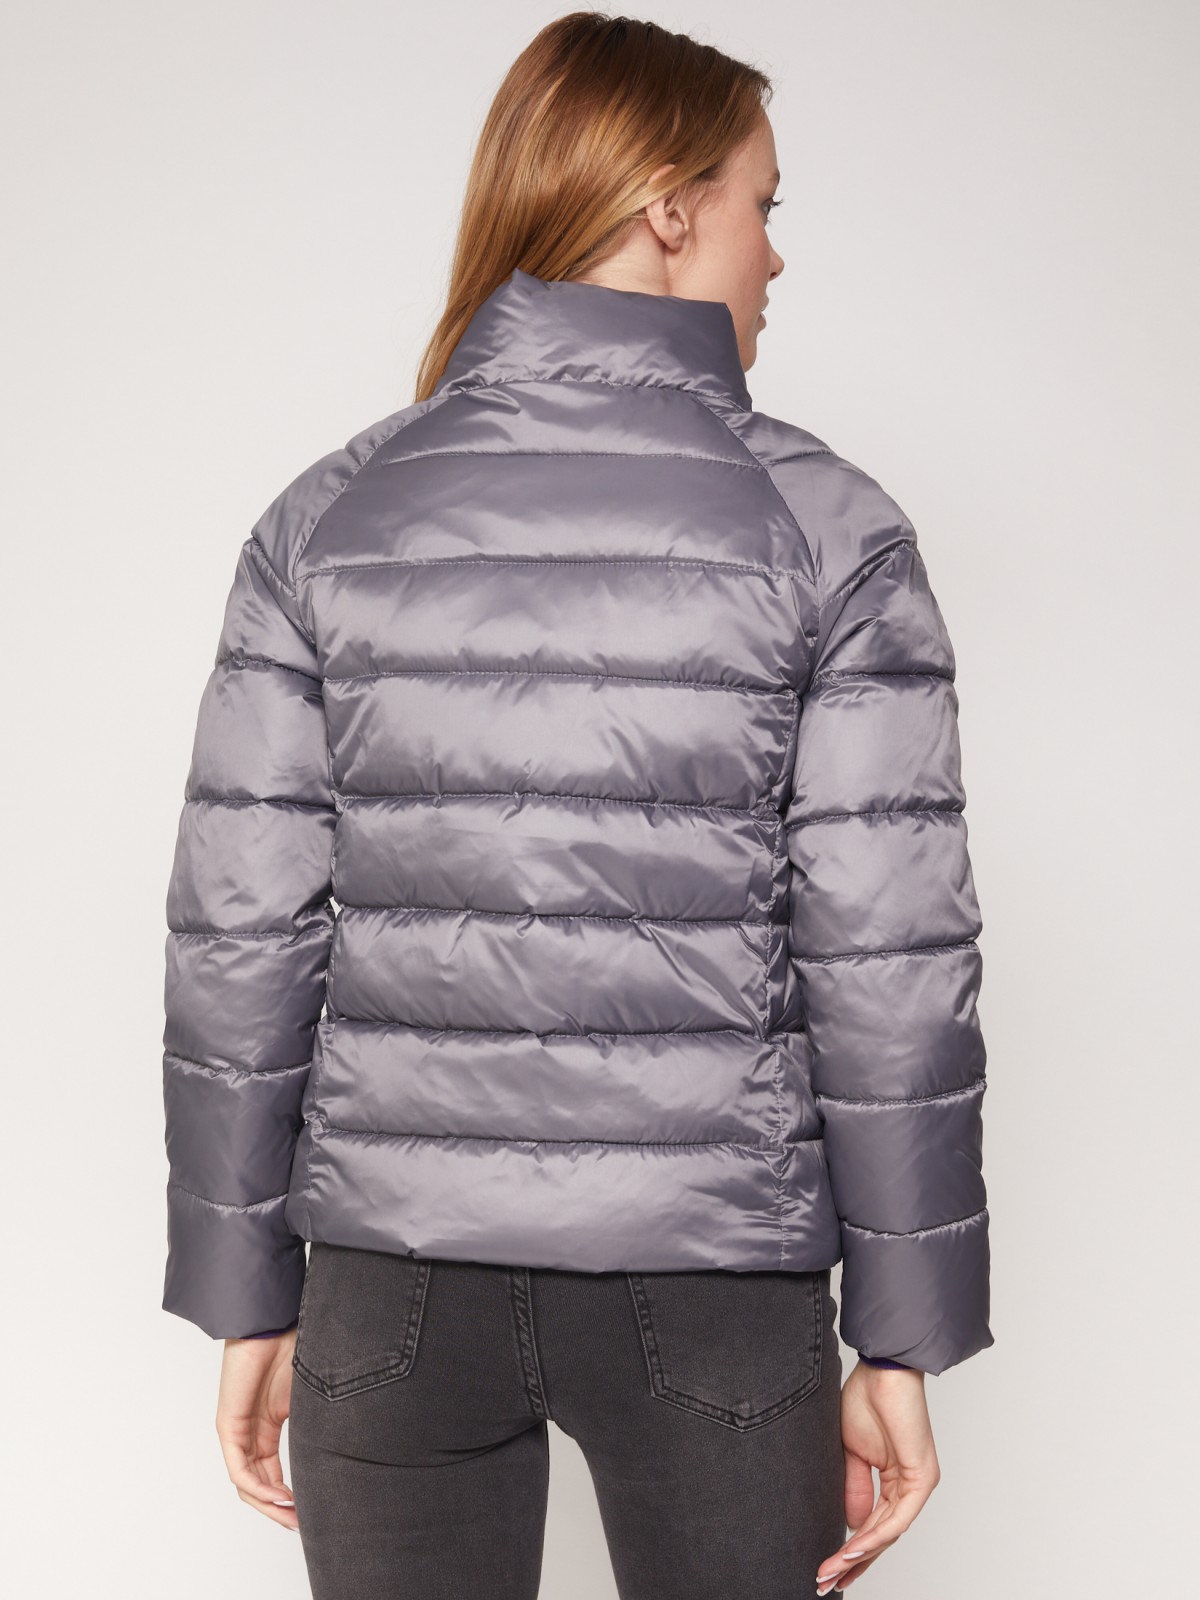 Лёгкая куртка с воротником-стойкой zolla 021335102174, цвет темно-серый, размер XS - фото 6